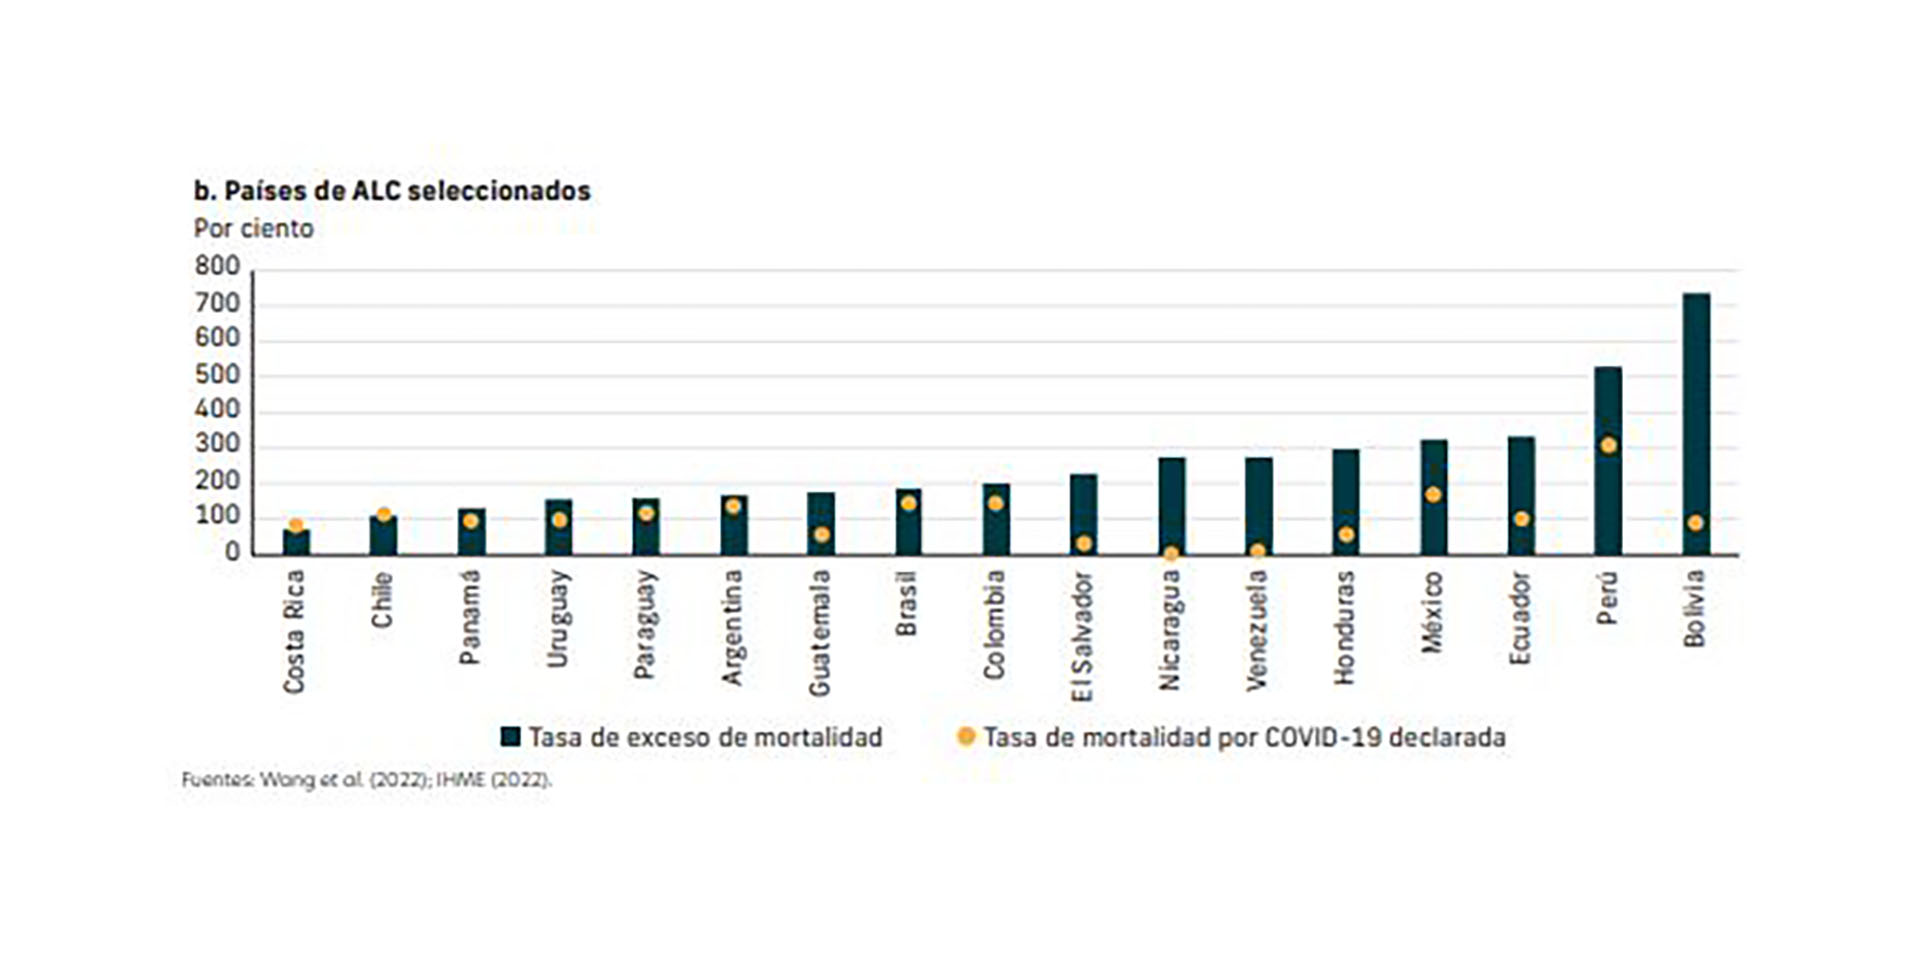 El informe del Banco Mundial destaca la brecha proyectada de muertes por Covid-19 en El Salvador y las reportadas por el gobierno del país.